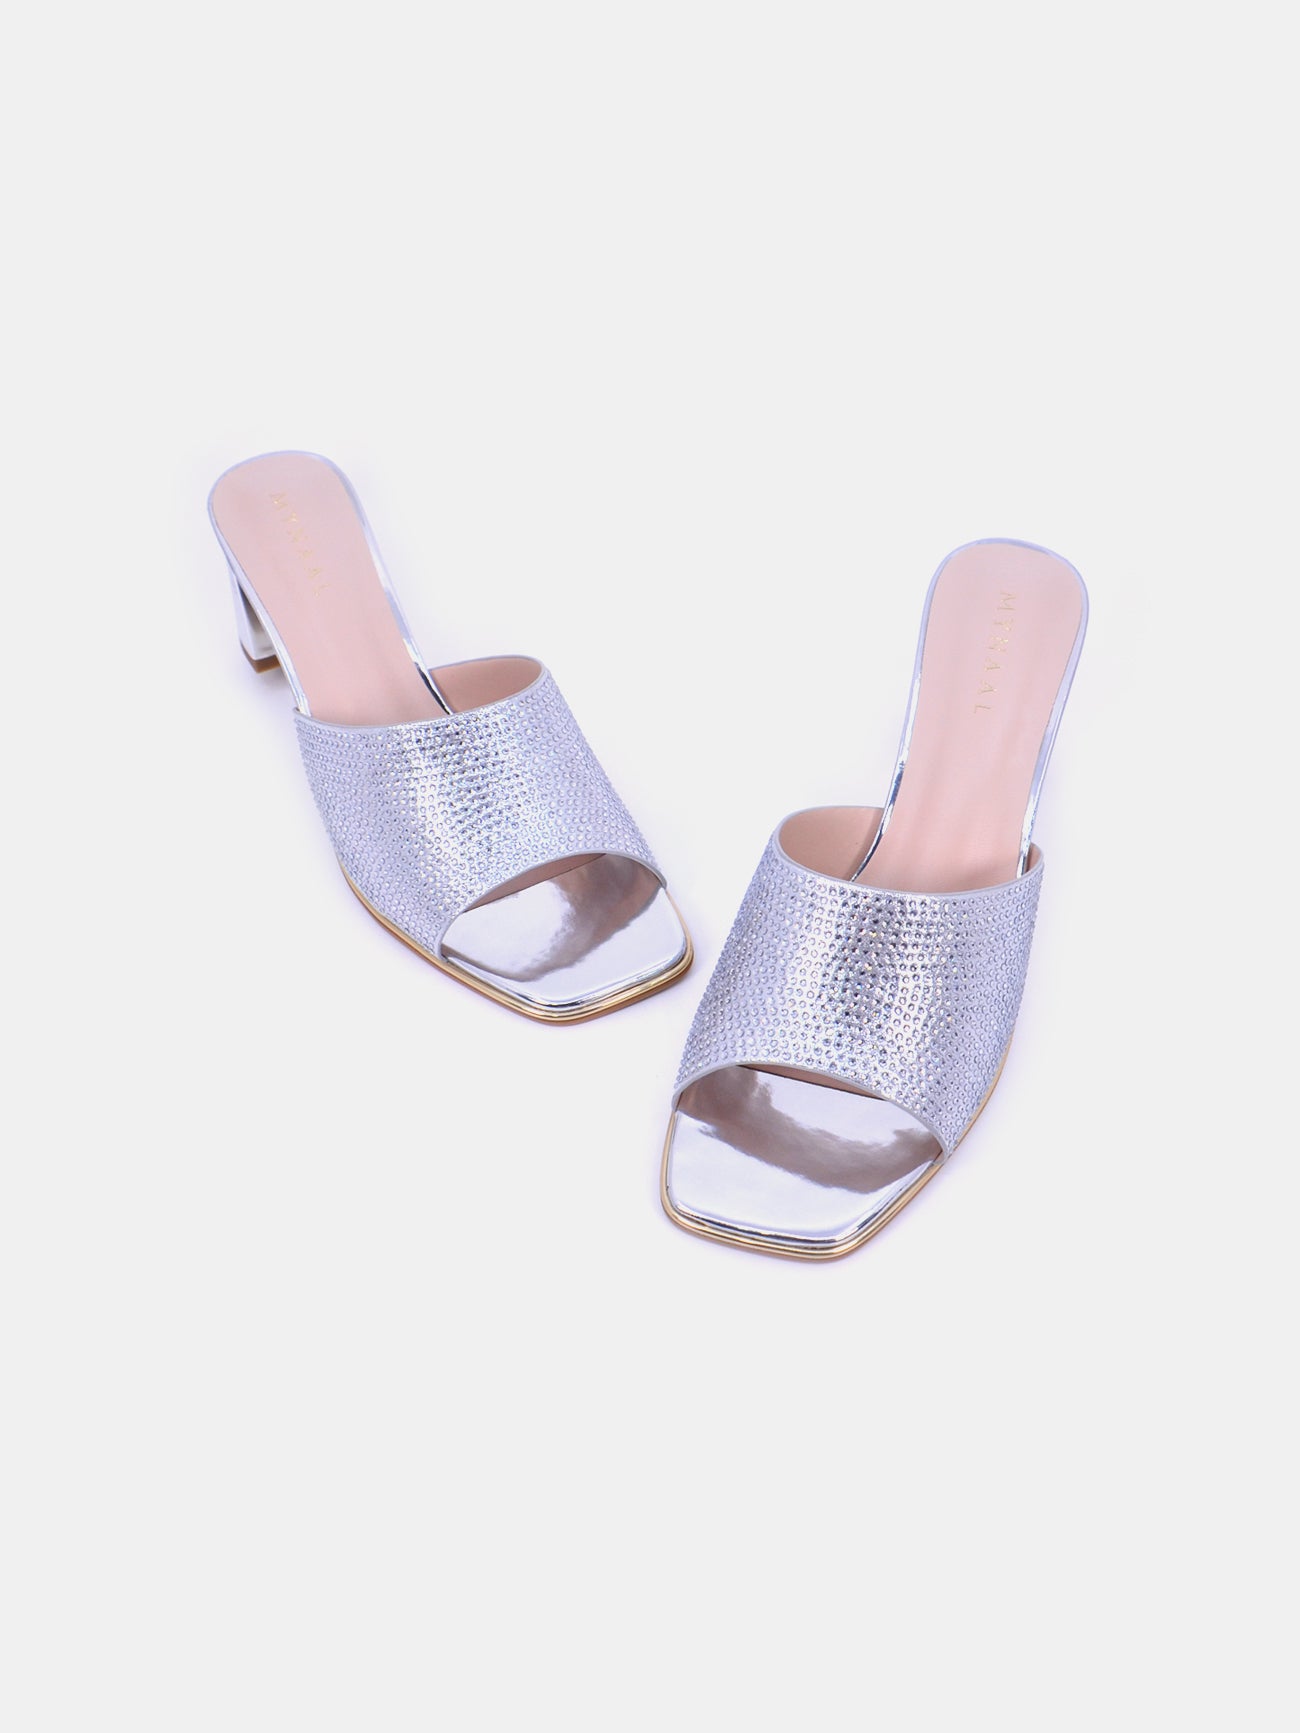 Mynaal Radiq Women's Block Heel Sandals #color_Silver